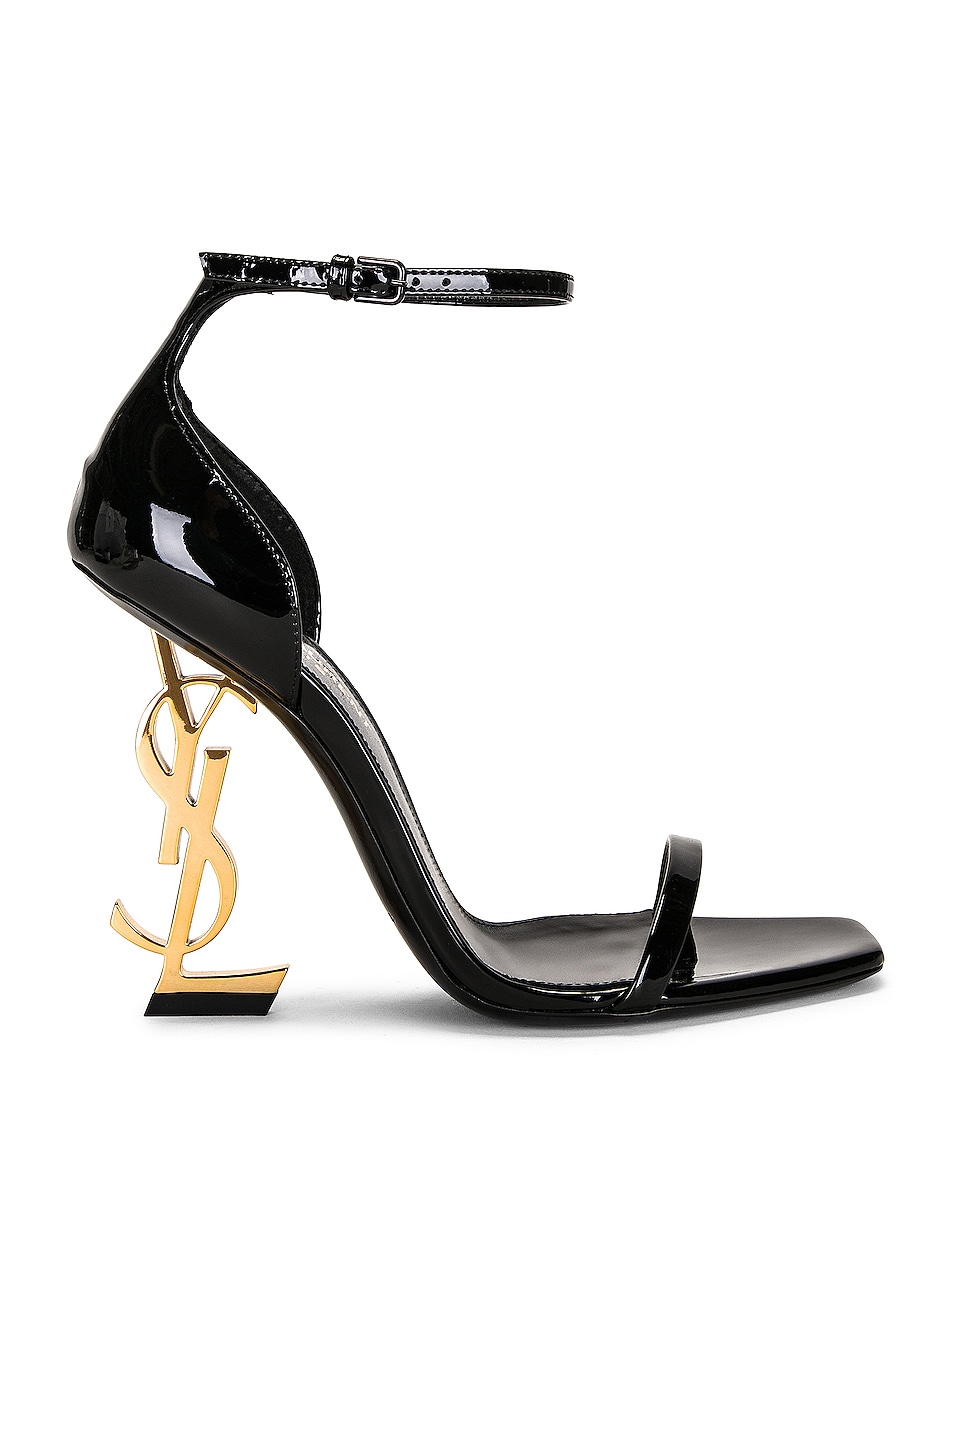 Designer High Heels | Designer Pumps and Stilettos for Women